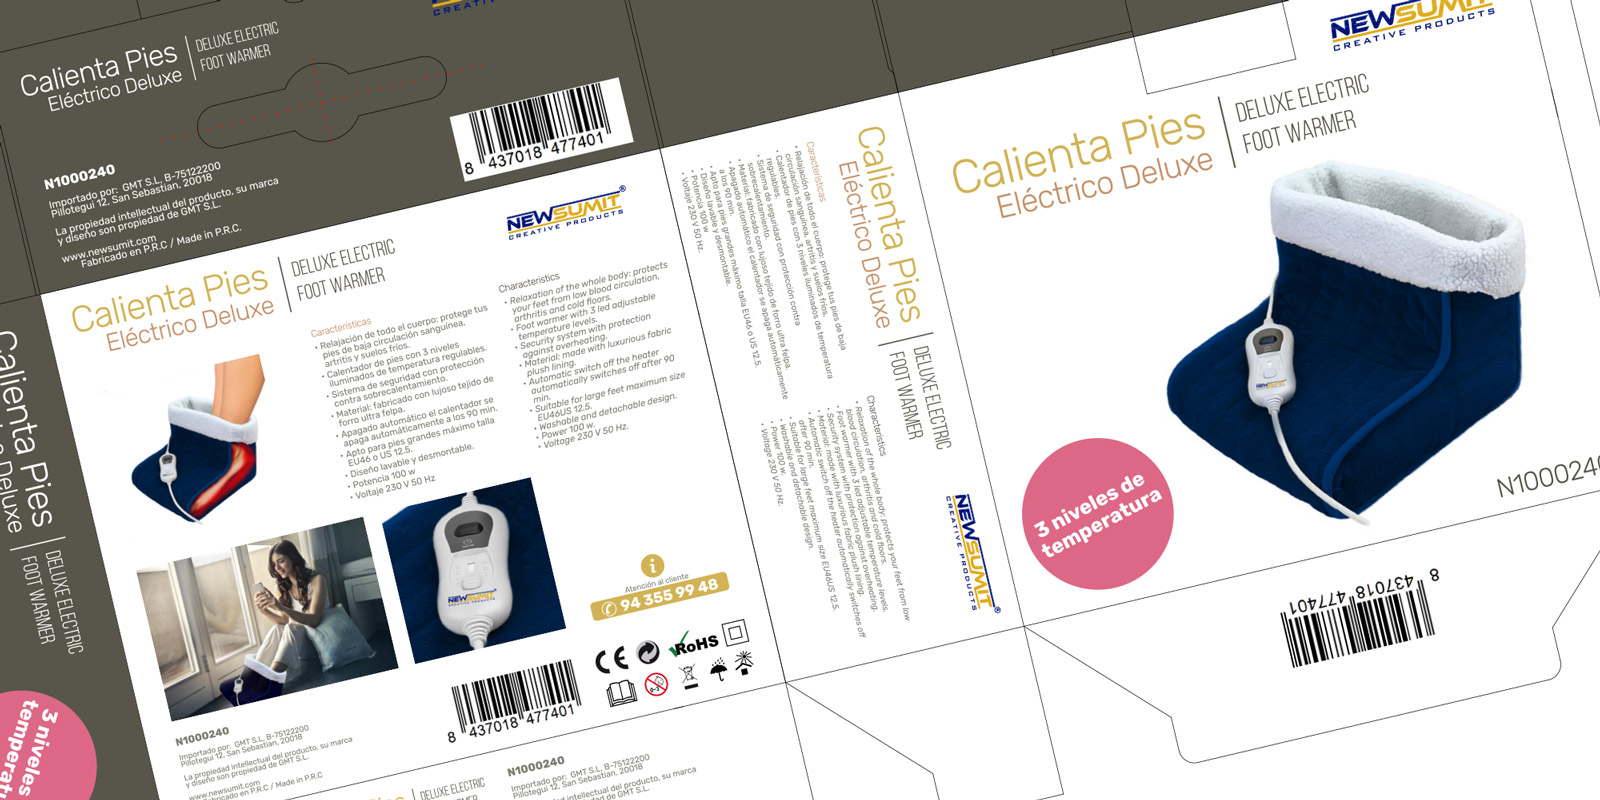 Diseño gráfico y creativo de etiquetas y packaging de productos de venta en AMAZON - calienta pies